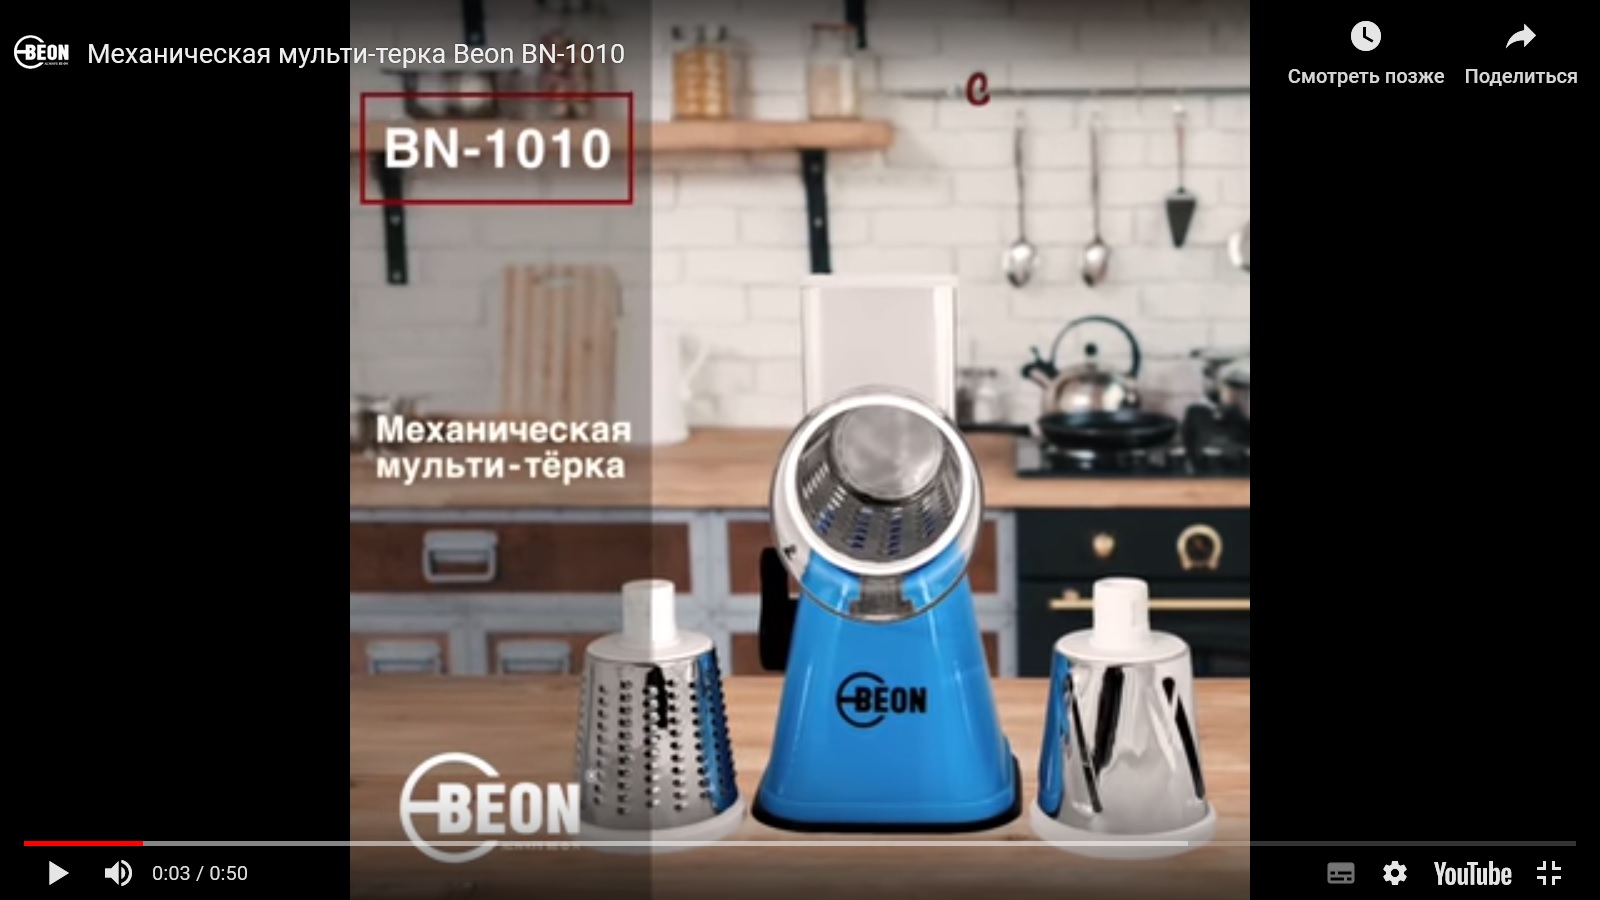 Механическая мульти-терка Beon BN-1010